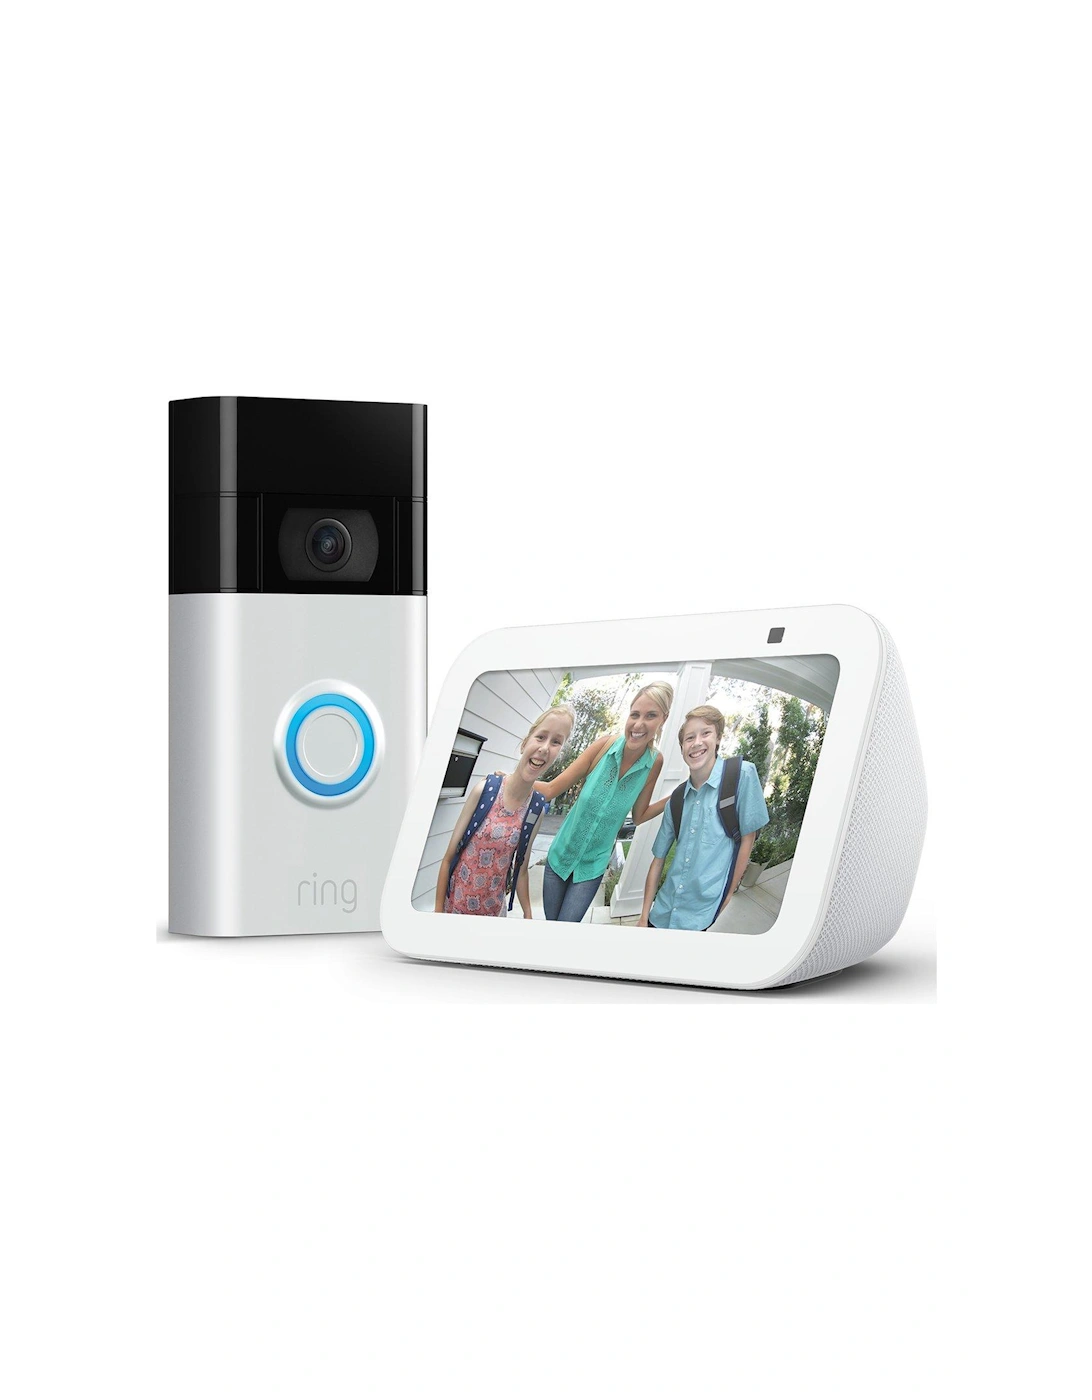 Video Doorbell with Amazon Echo Show 5, 2 of 1